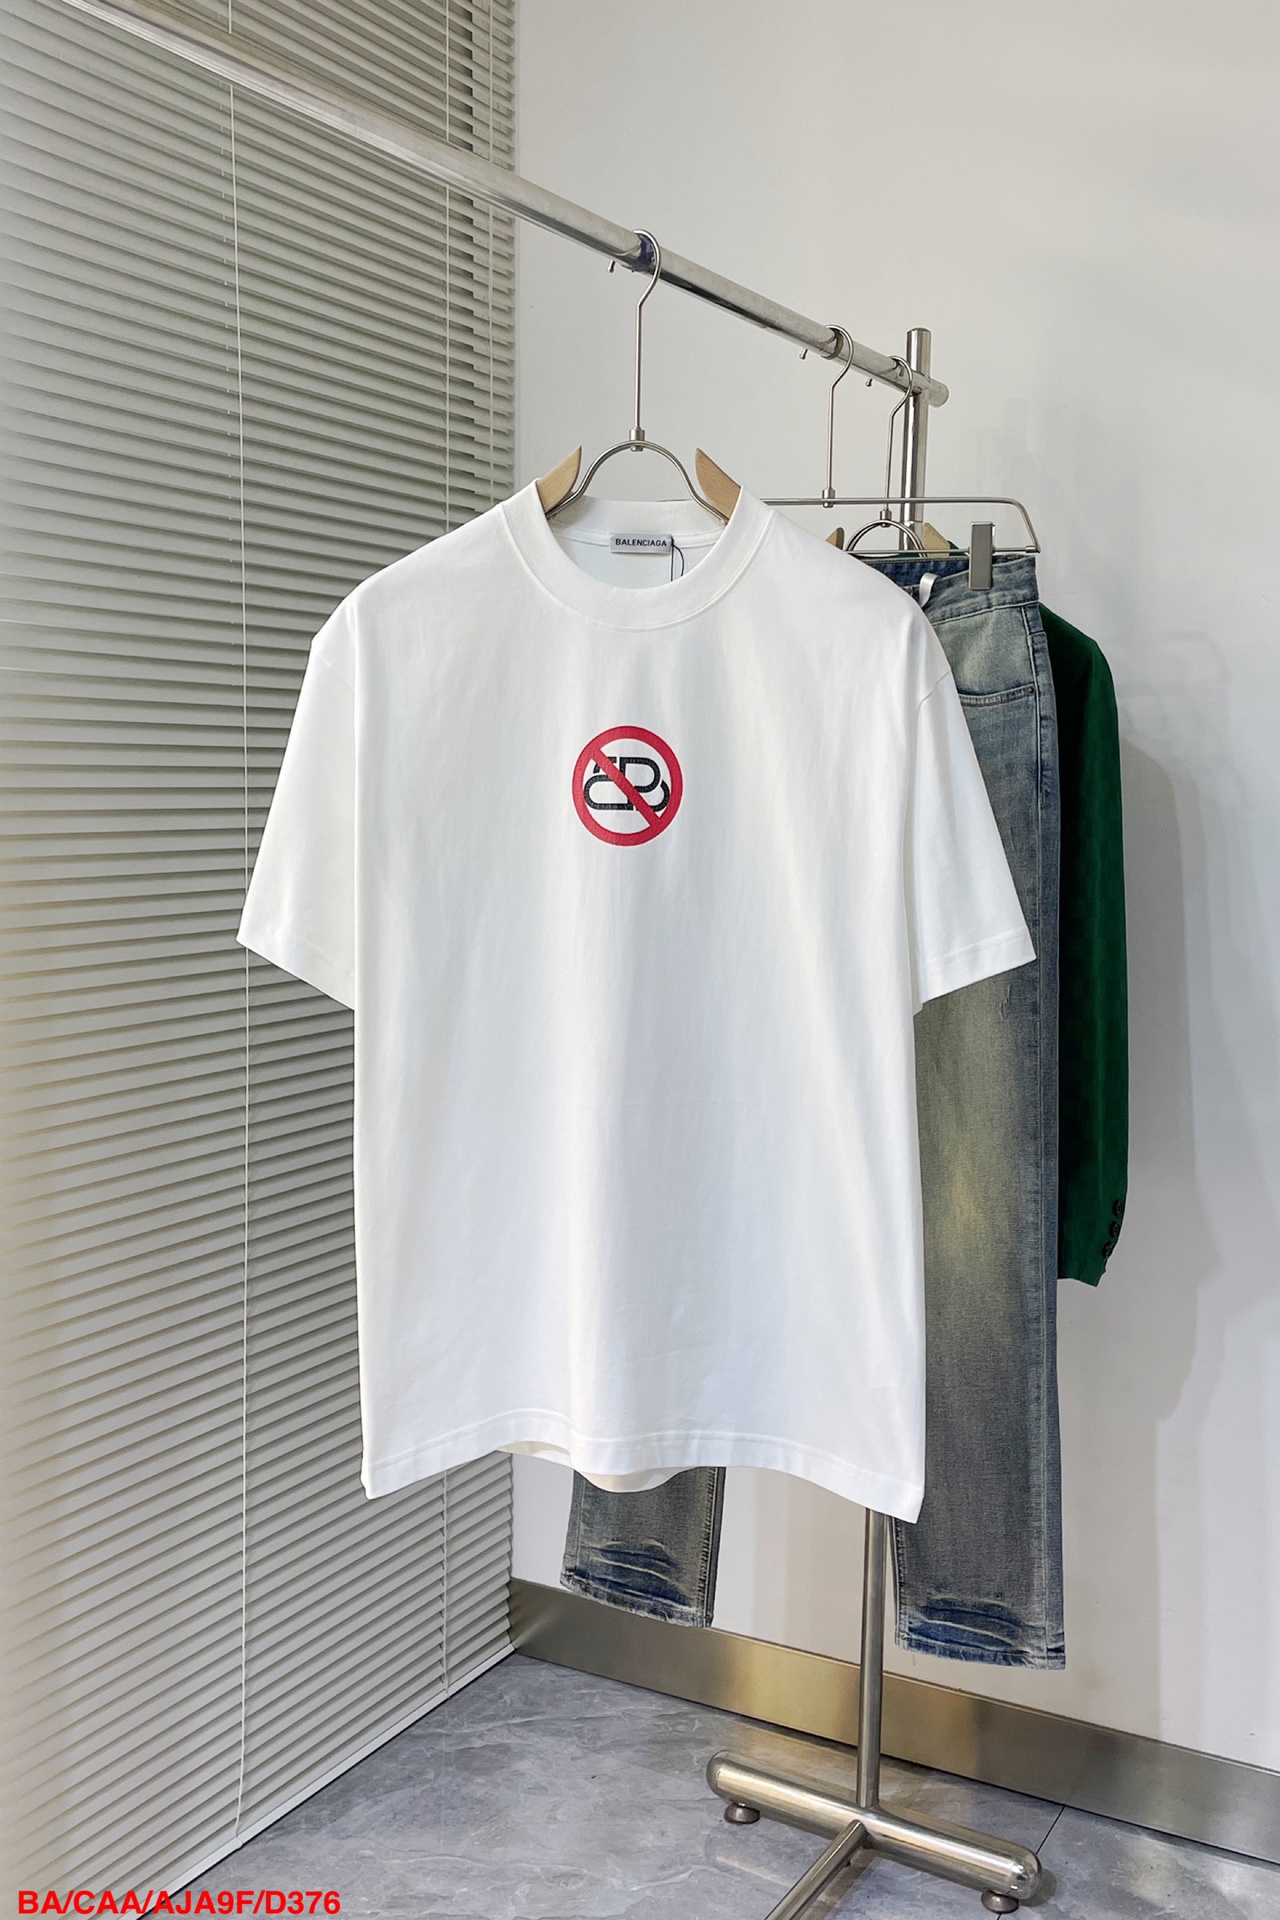 Balenciaga Clothing T-Shirt Wholesale China
 Printing Men Cotton Knitting Short Sleeve